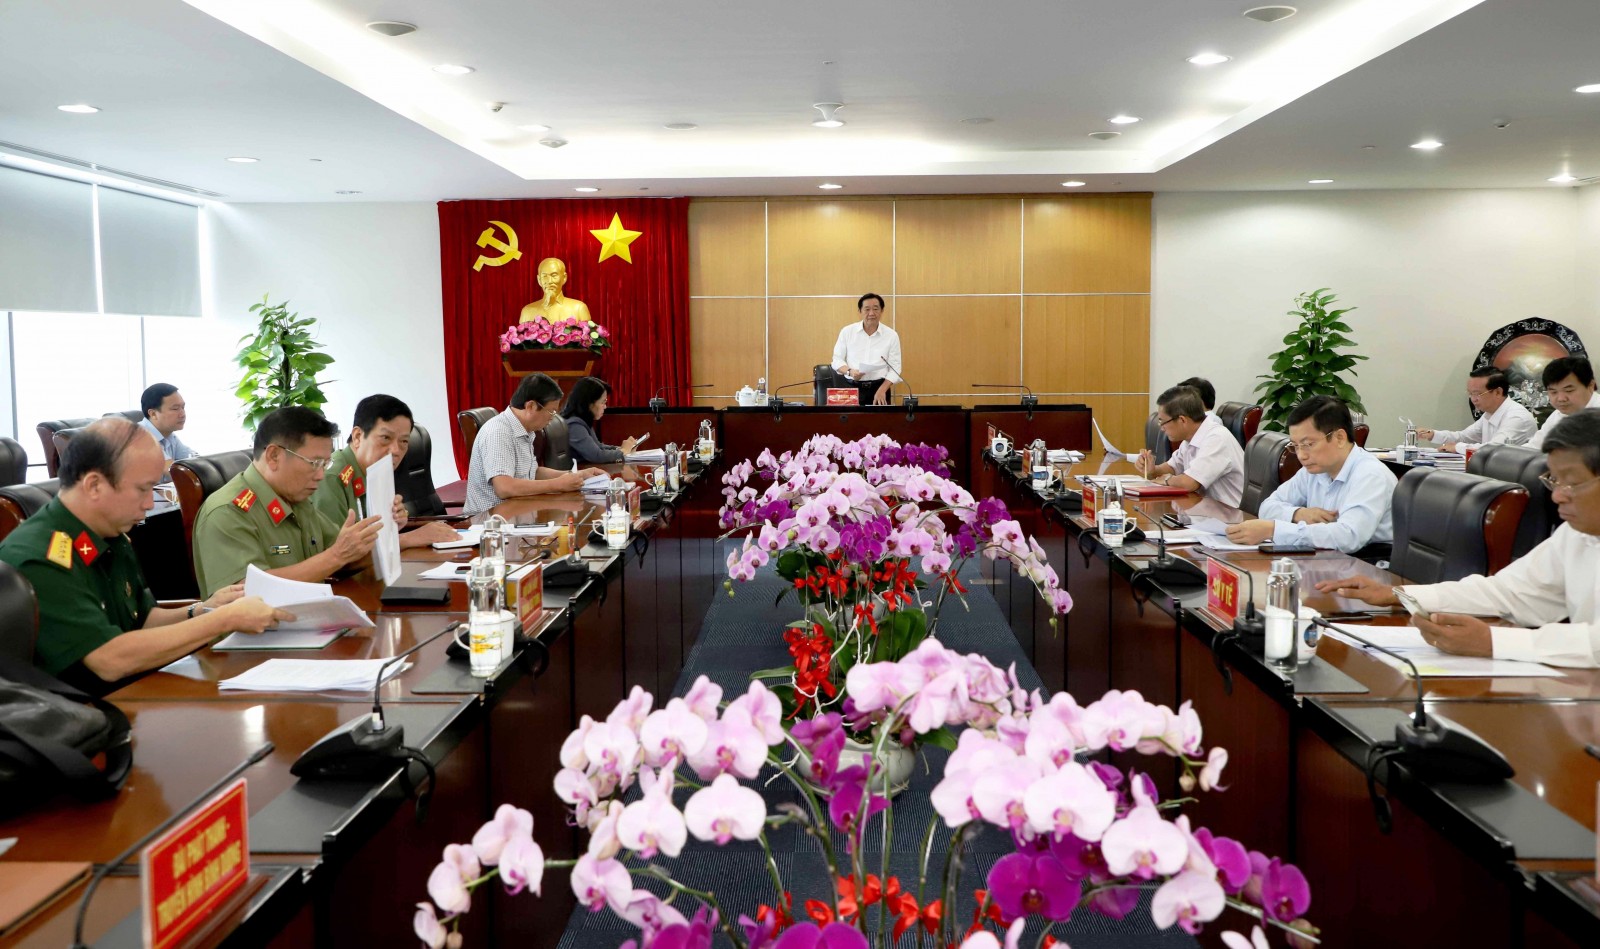 Đồng chí Nguyễn Hoàng Thao, Phó Bí thư Thường trực Tỉnh ủy tỉnh Bình Dương, đã chủ trì cuộc họp các tiểu ban tổ chức Đại hội Đảng bộ tỉnh Bình Dương lần thứ XI. (Ảnh: Hồ Văn)